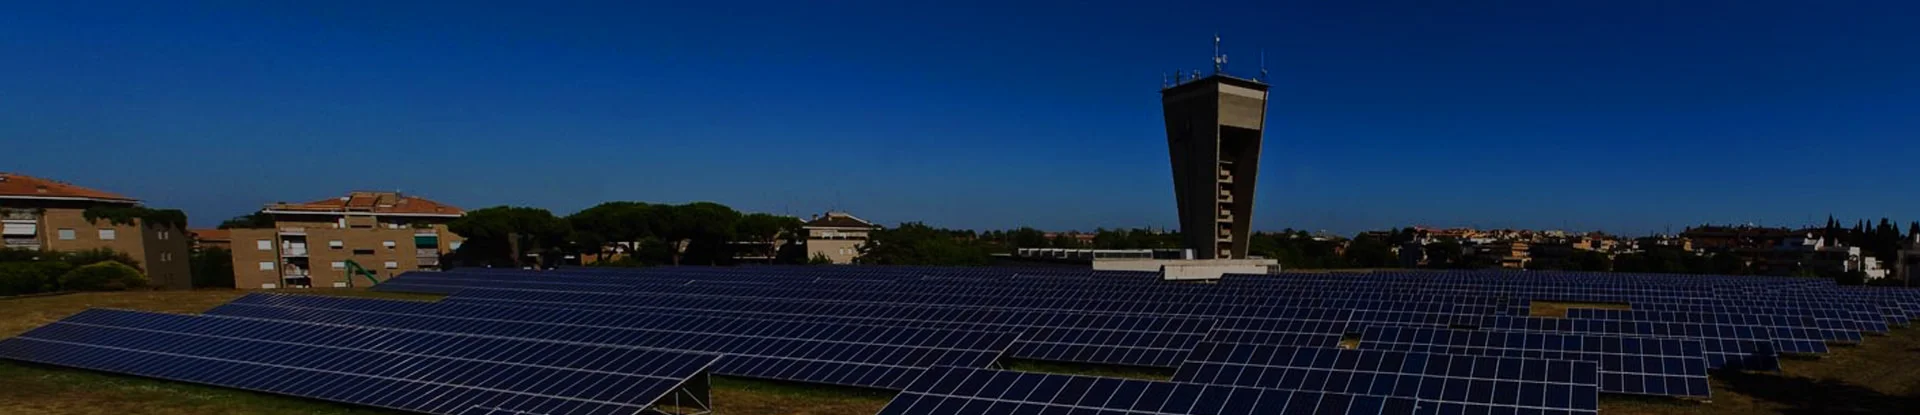 L’energia solare per uno sviluppo sostenibile